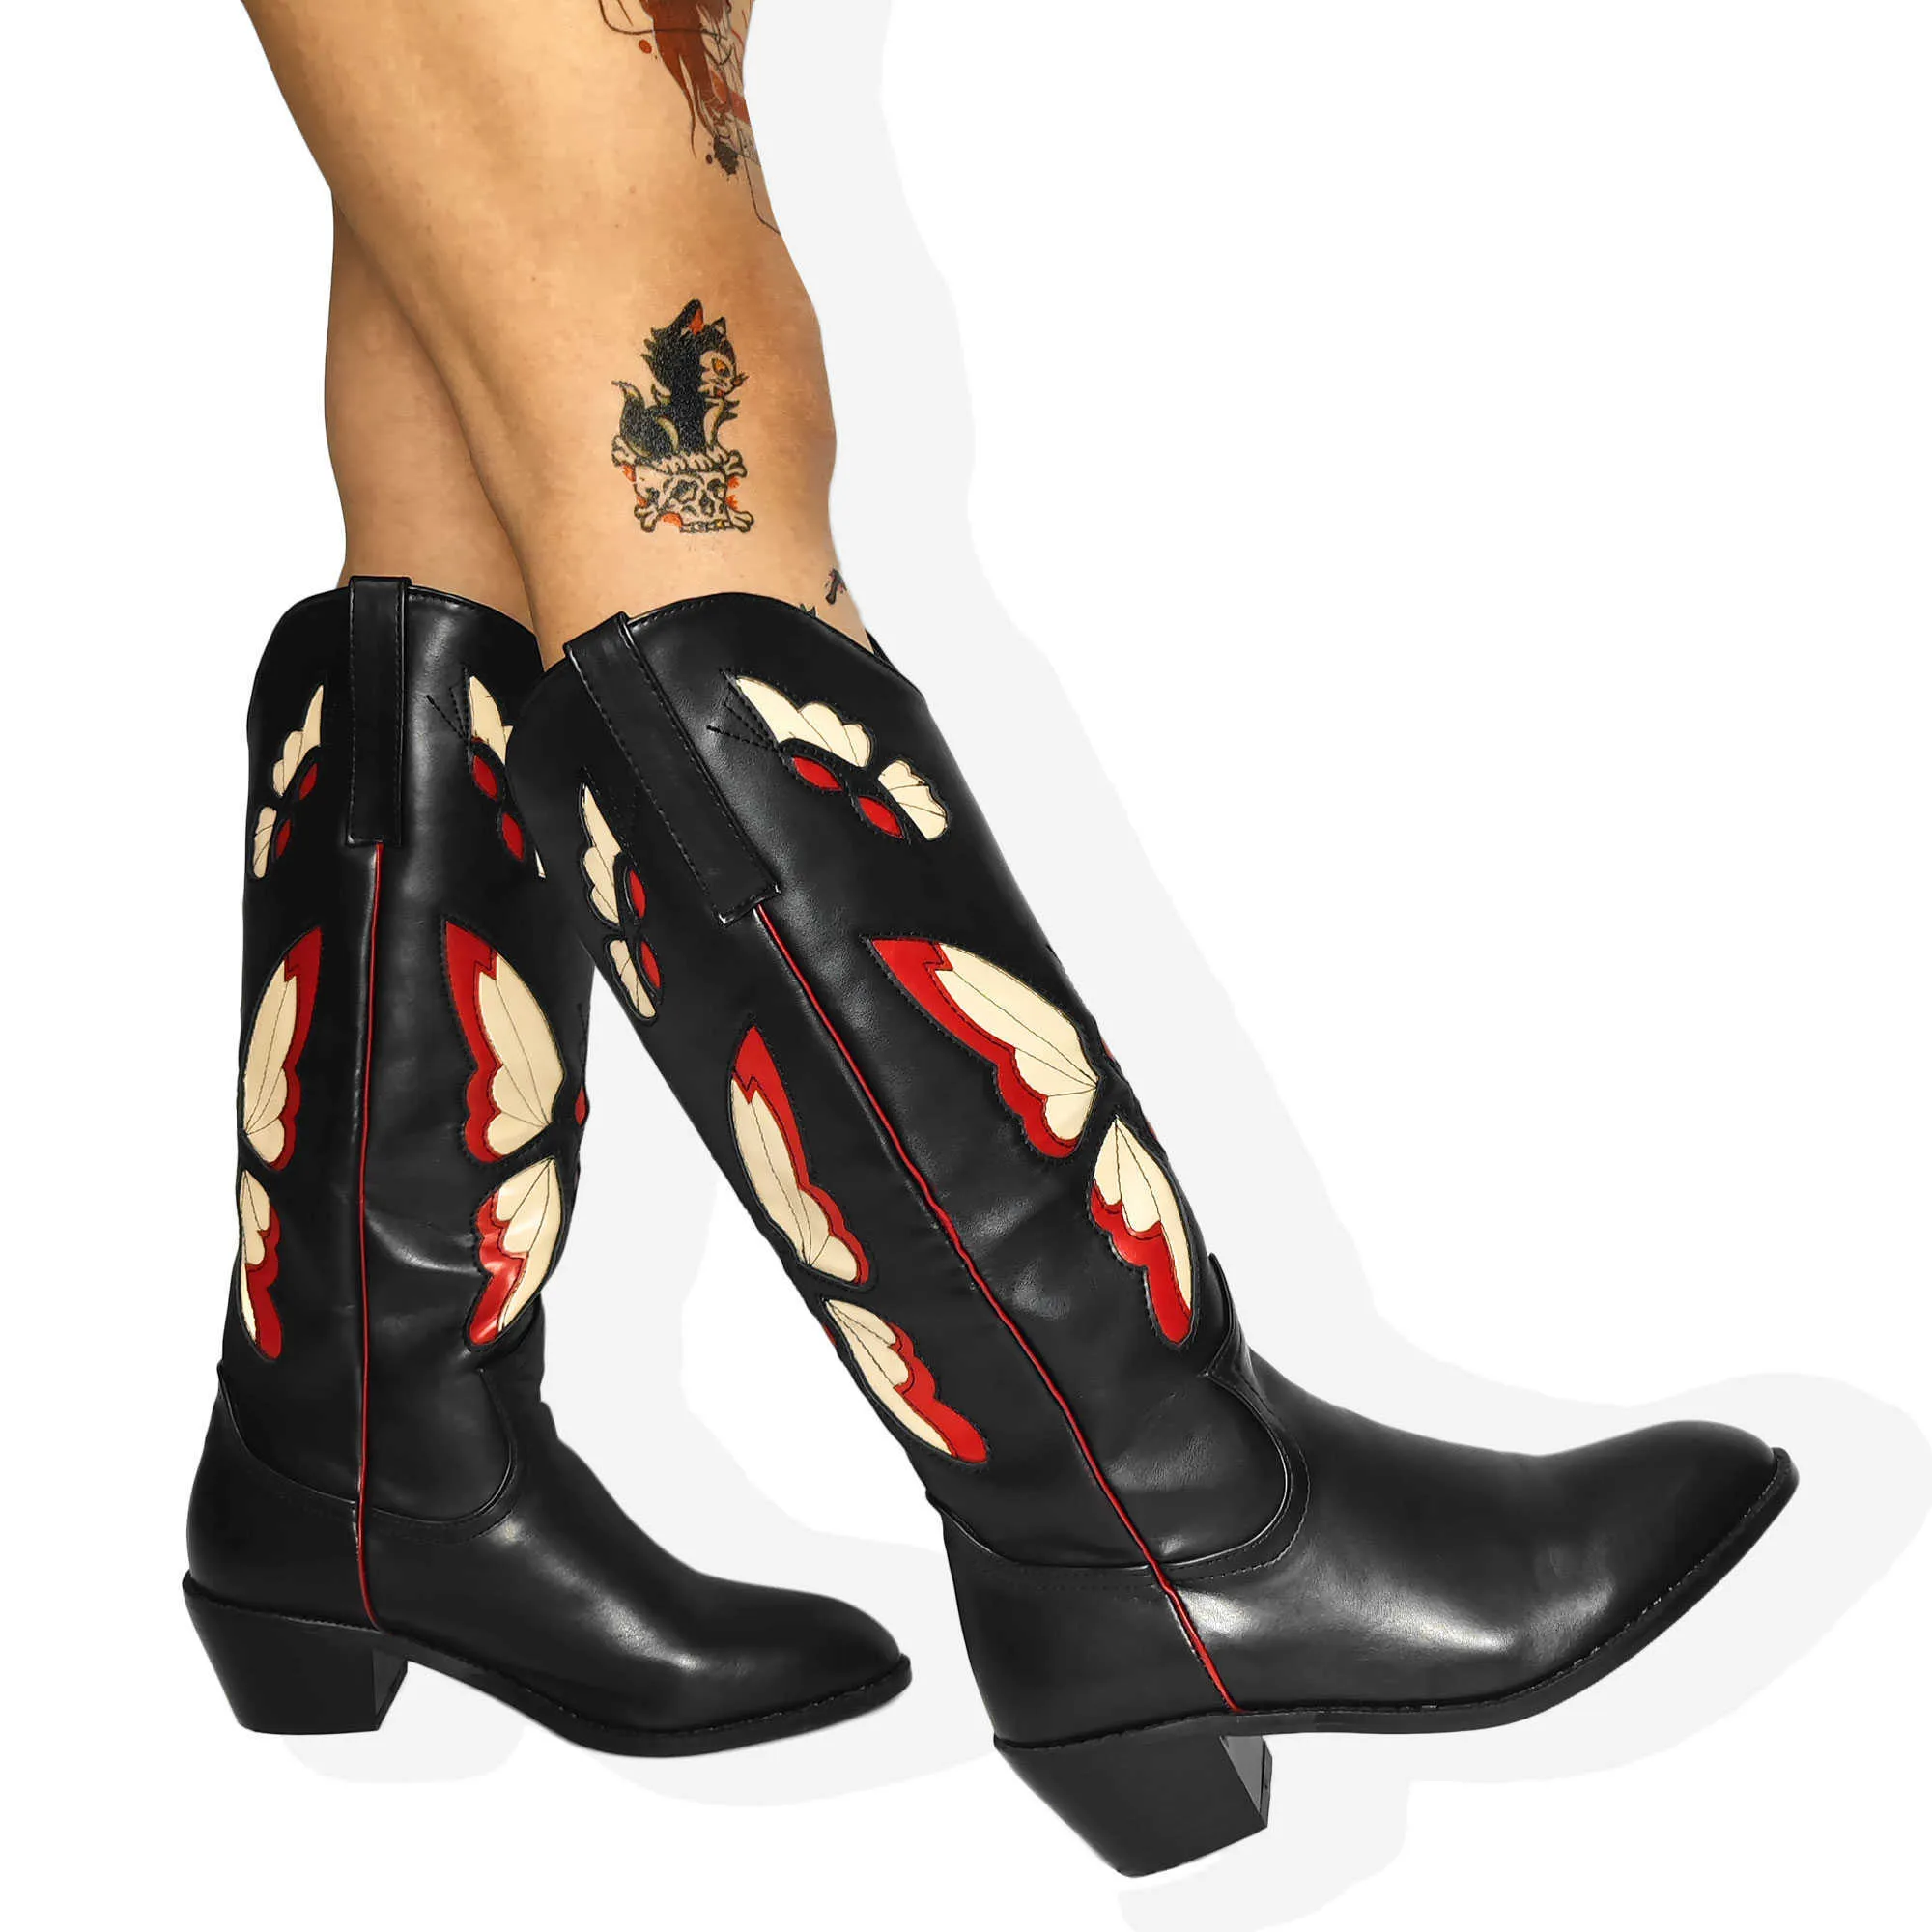 Stiefel Cowboy Cowgirl Mittelkalb Stiefel Schmetterling bestickt Markendesign Gothic Stil Herbst Winter Slip On Western Retro Schuhe Z0605